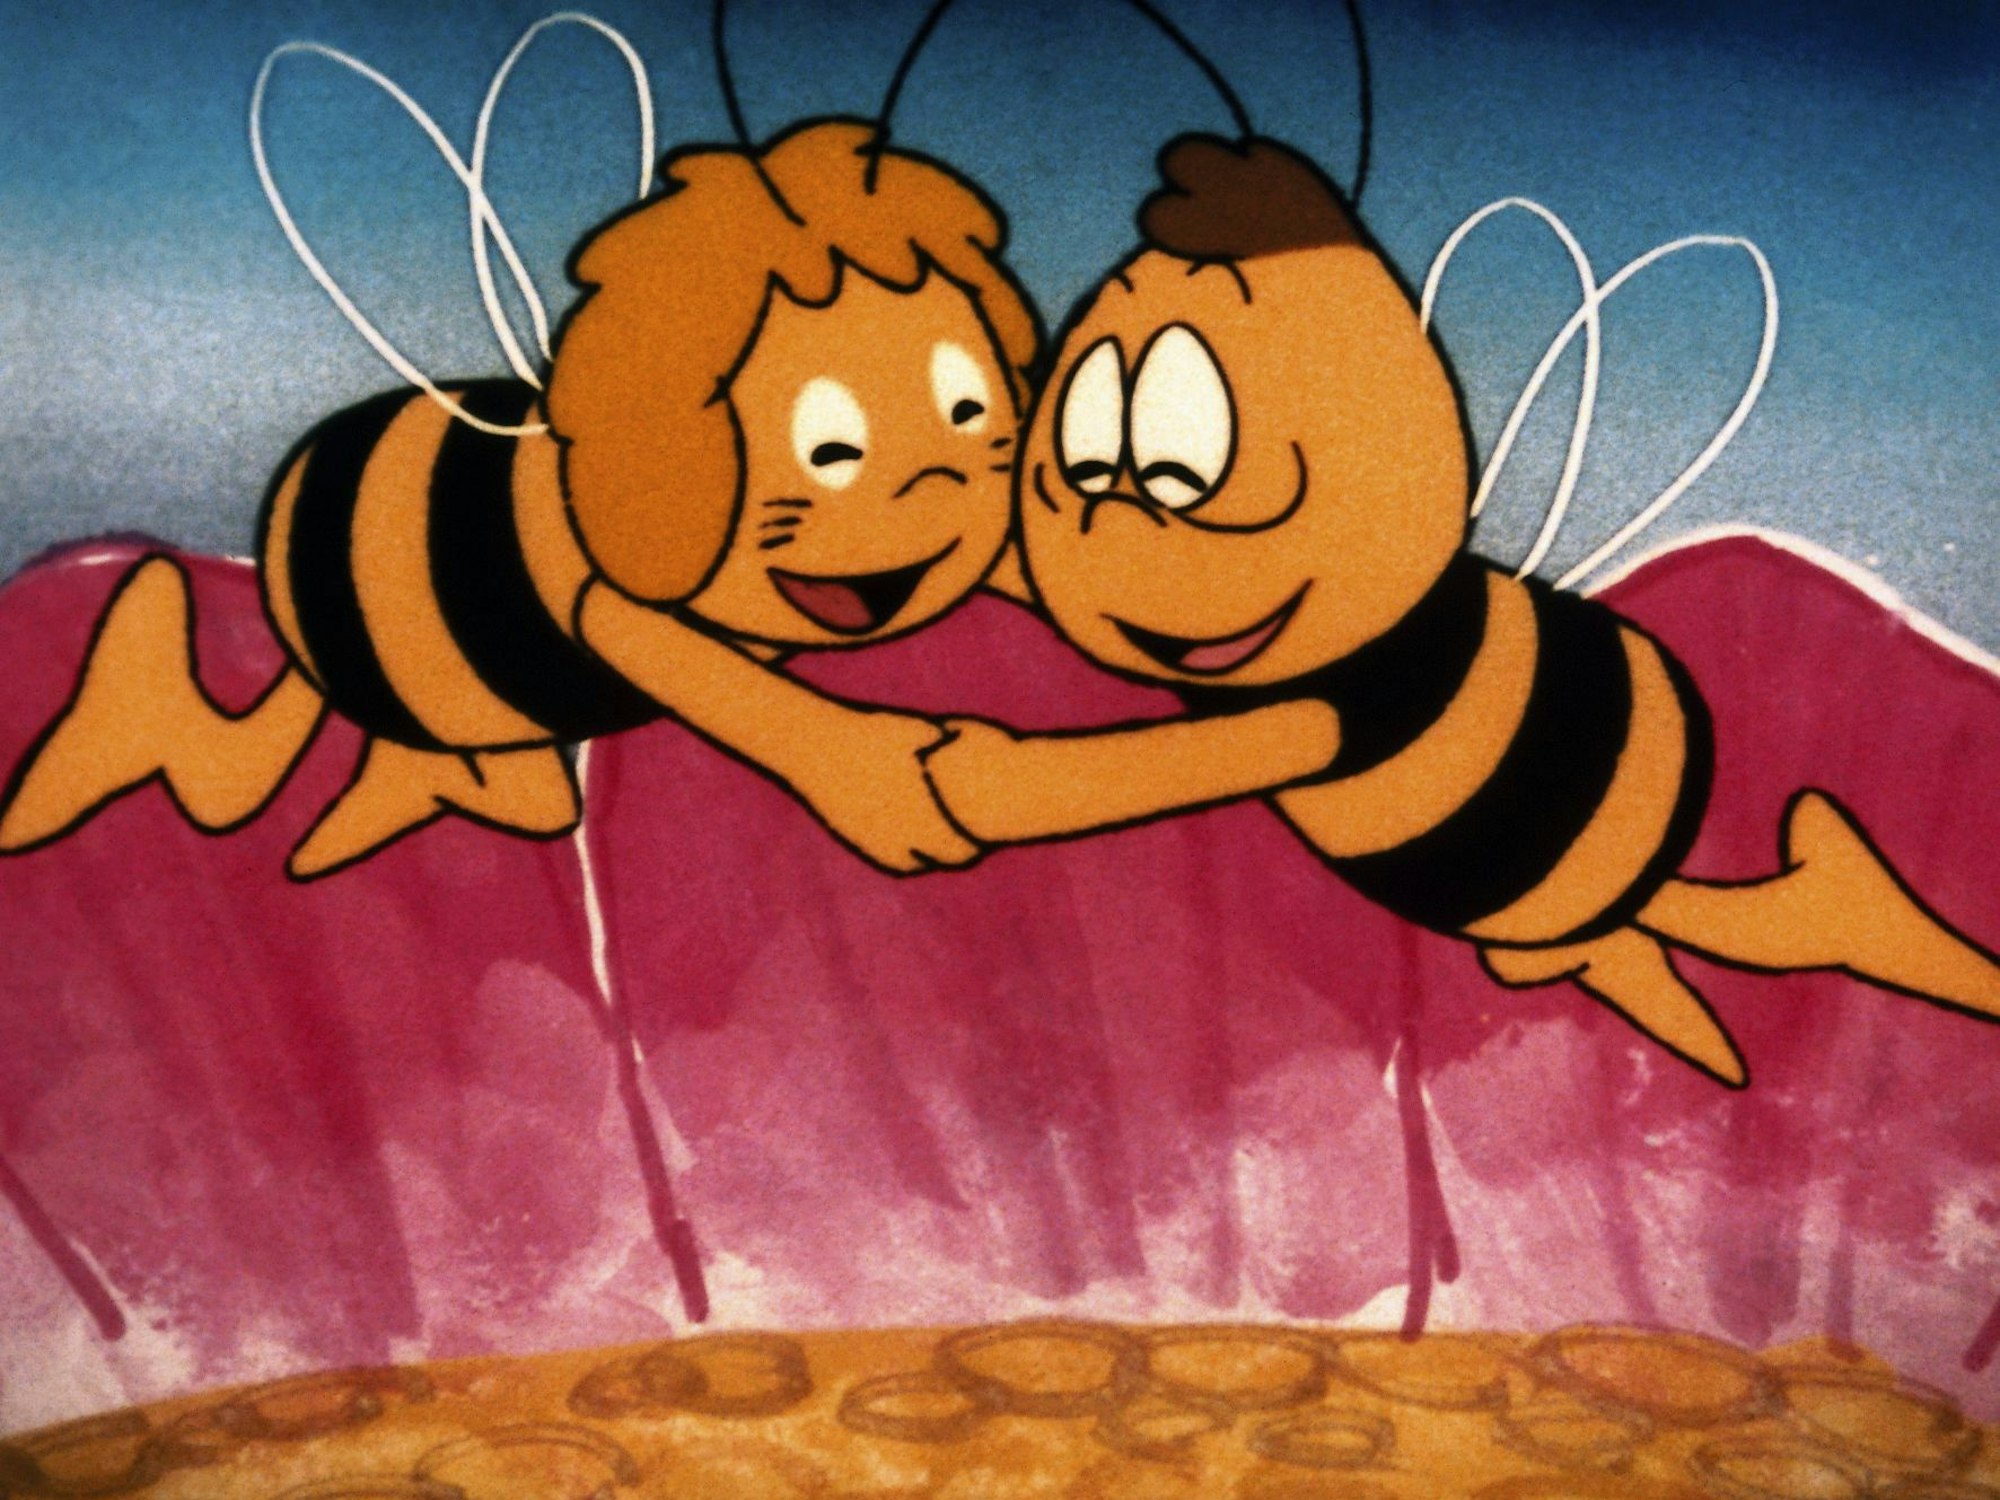 Biene Maja und Kumpel Willi freuen sich auf dieser undatierten Aufnahme der Kinderserie „Biene Maja“, die am 9. September 1976 erstmals im ZDF lief.